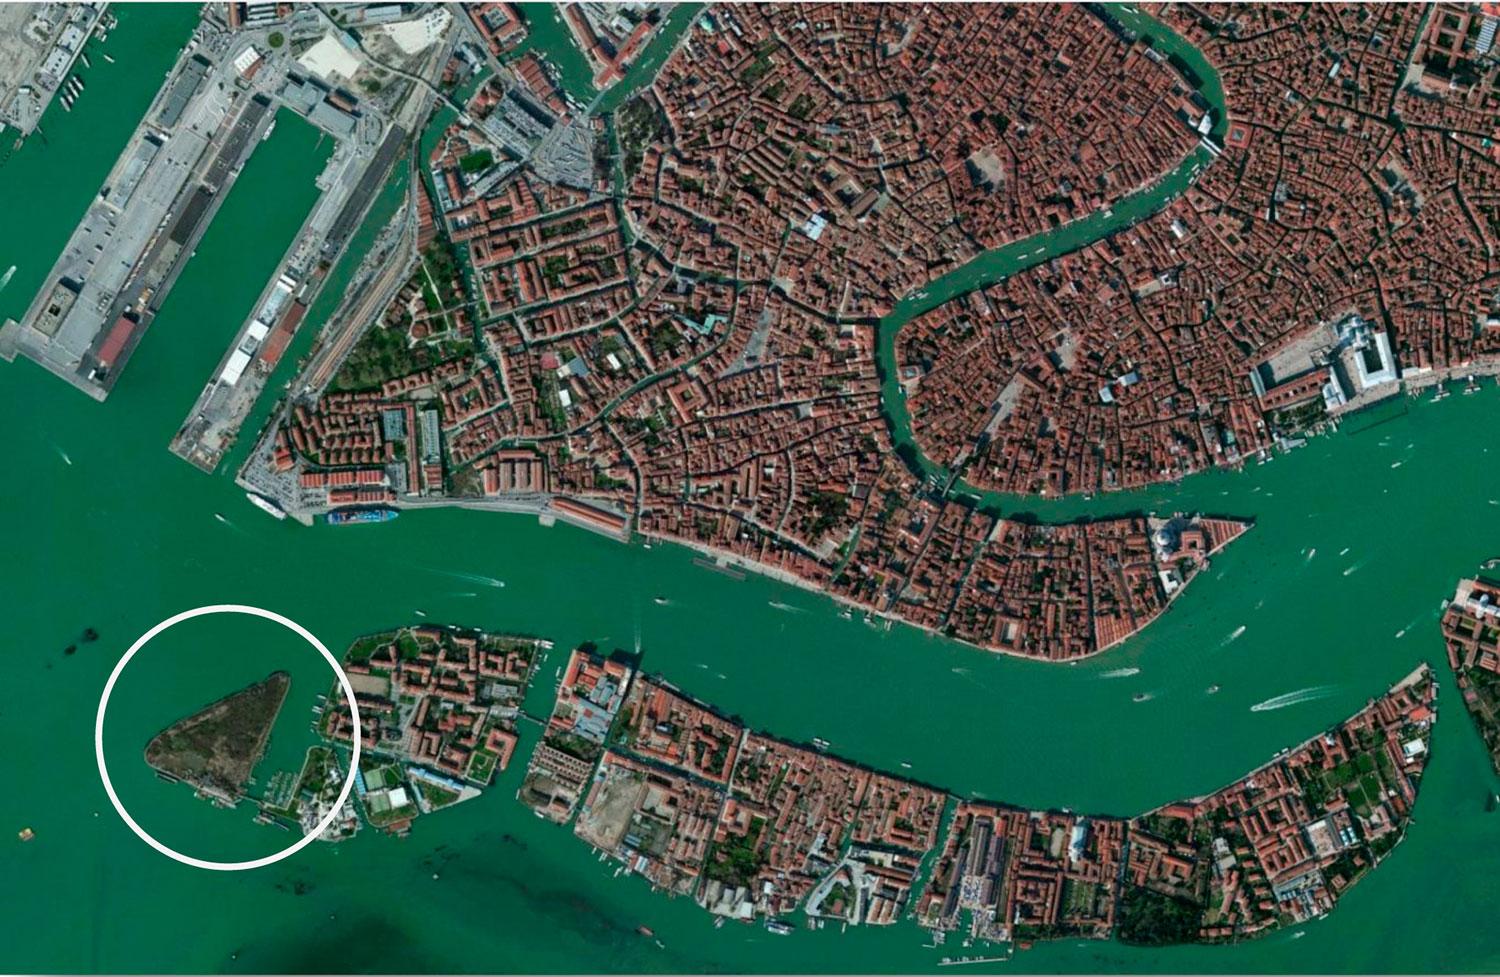 Ön San Biagio, där nöjeparken planeras, inringad. Pirerna tvärs över vattnet är den omstridda kryssningshamnen i Venedig. Markusplatsen och Canal Grande syns till höger i bild.